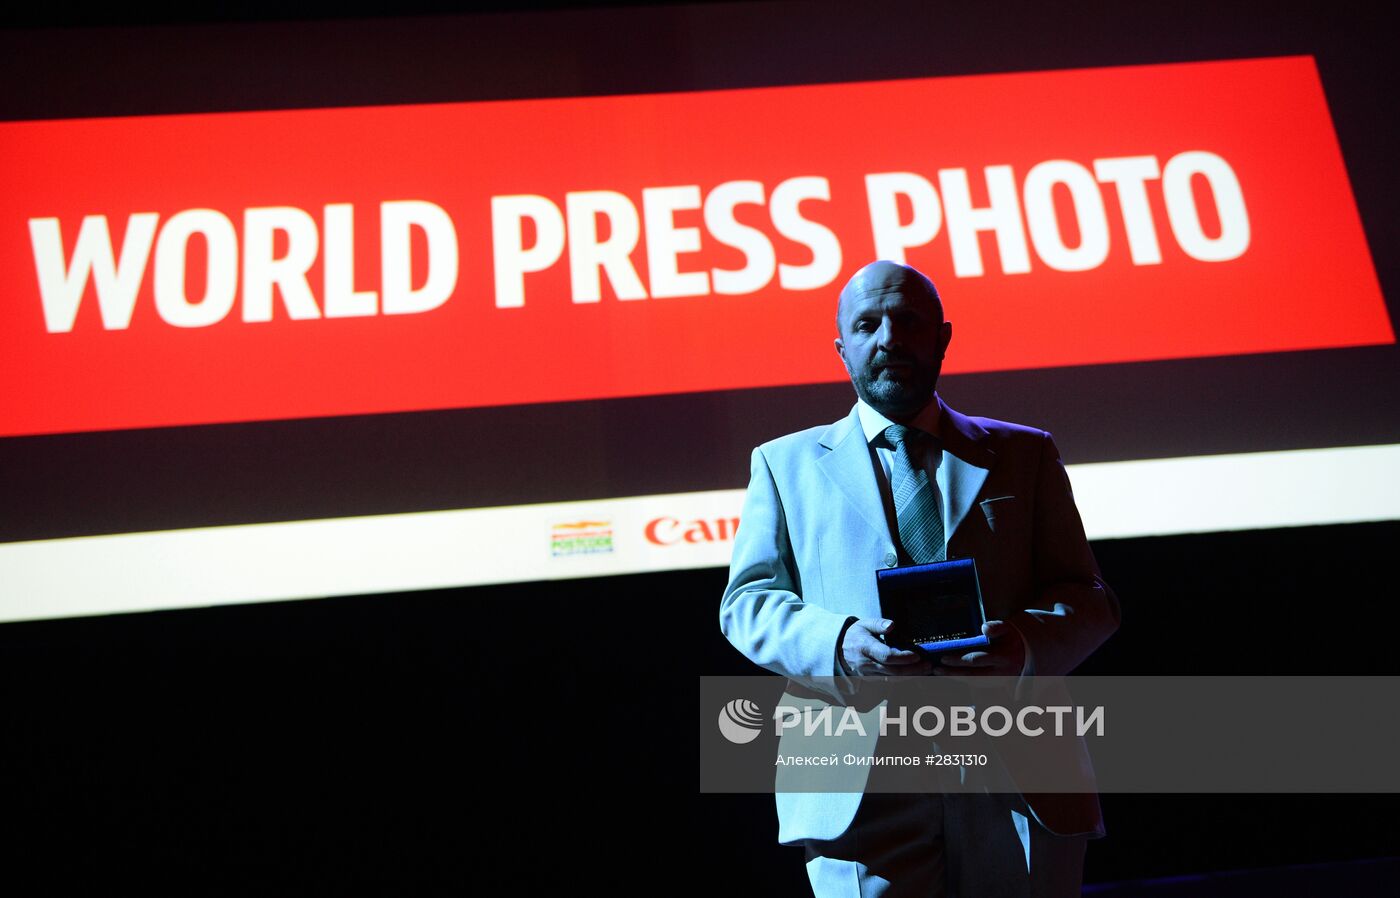 Фотокорреспонденту МИА "Россия сегодня" В. Песне вручили премию World Press Photo